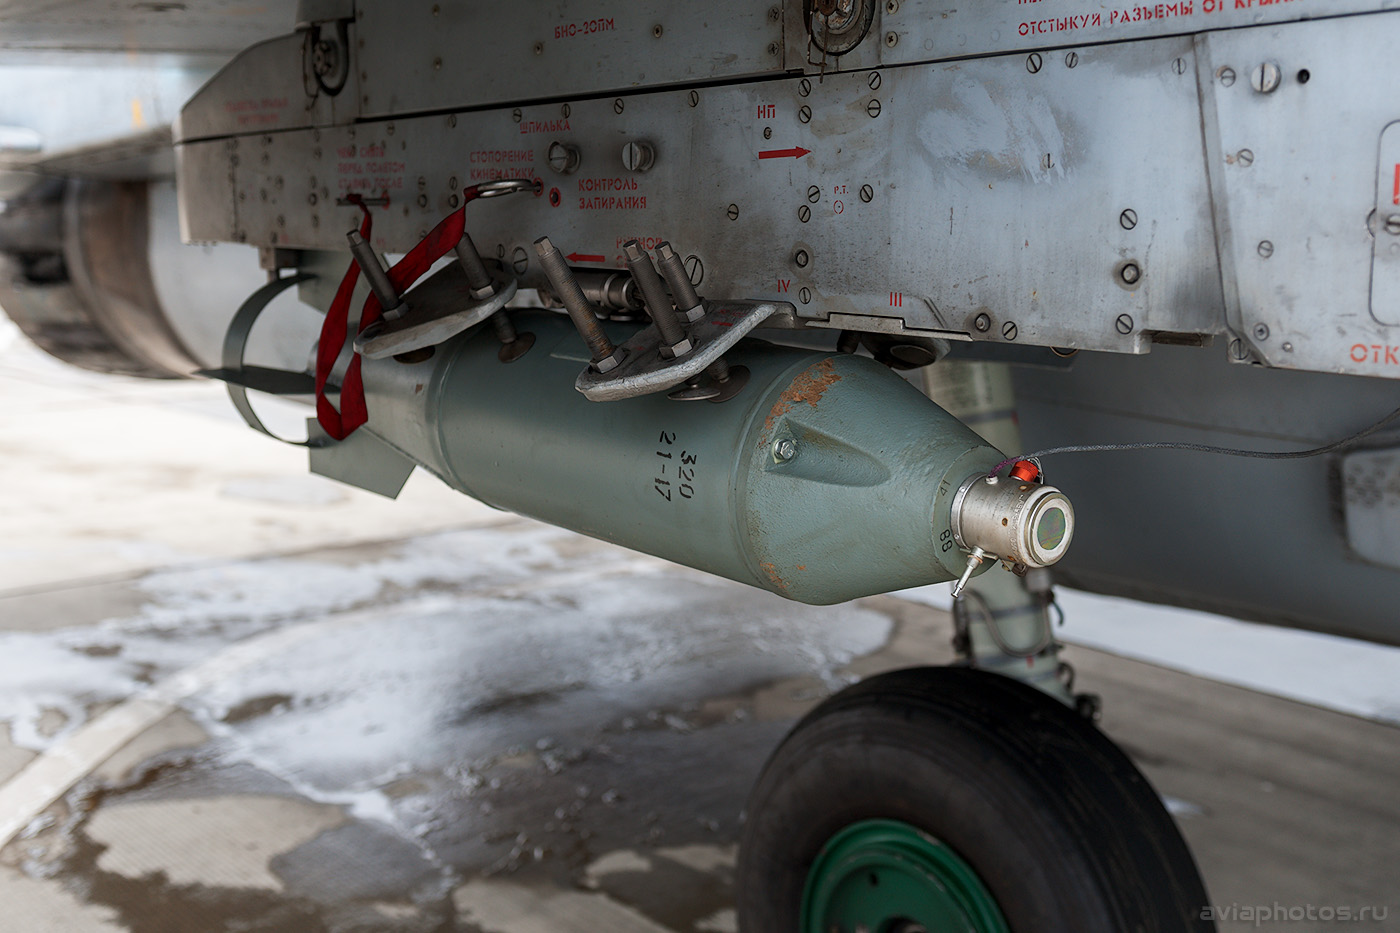 Планирующие бомбы фаб. Бомба Фаб 500 м 62. П-50ш - практическая Авиационная бомба. Фаб-500 и Фаб-500т. Авиационная бомба ПБК-500у «дрель».